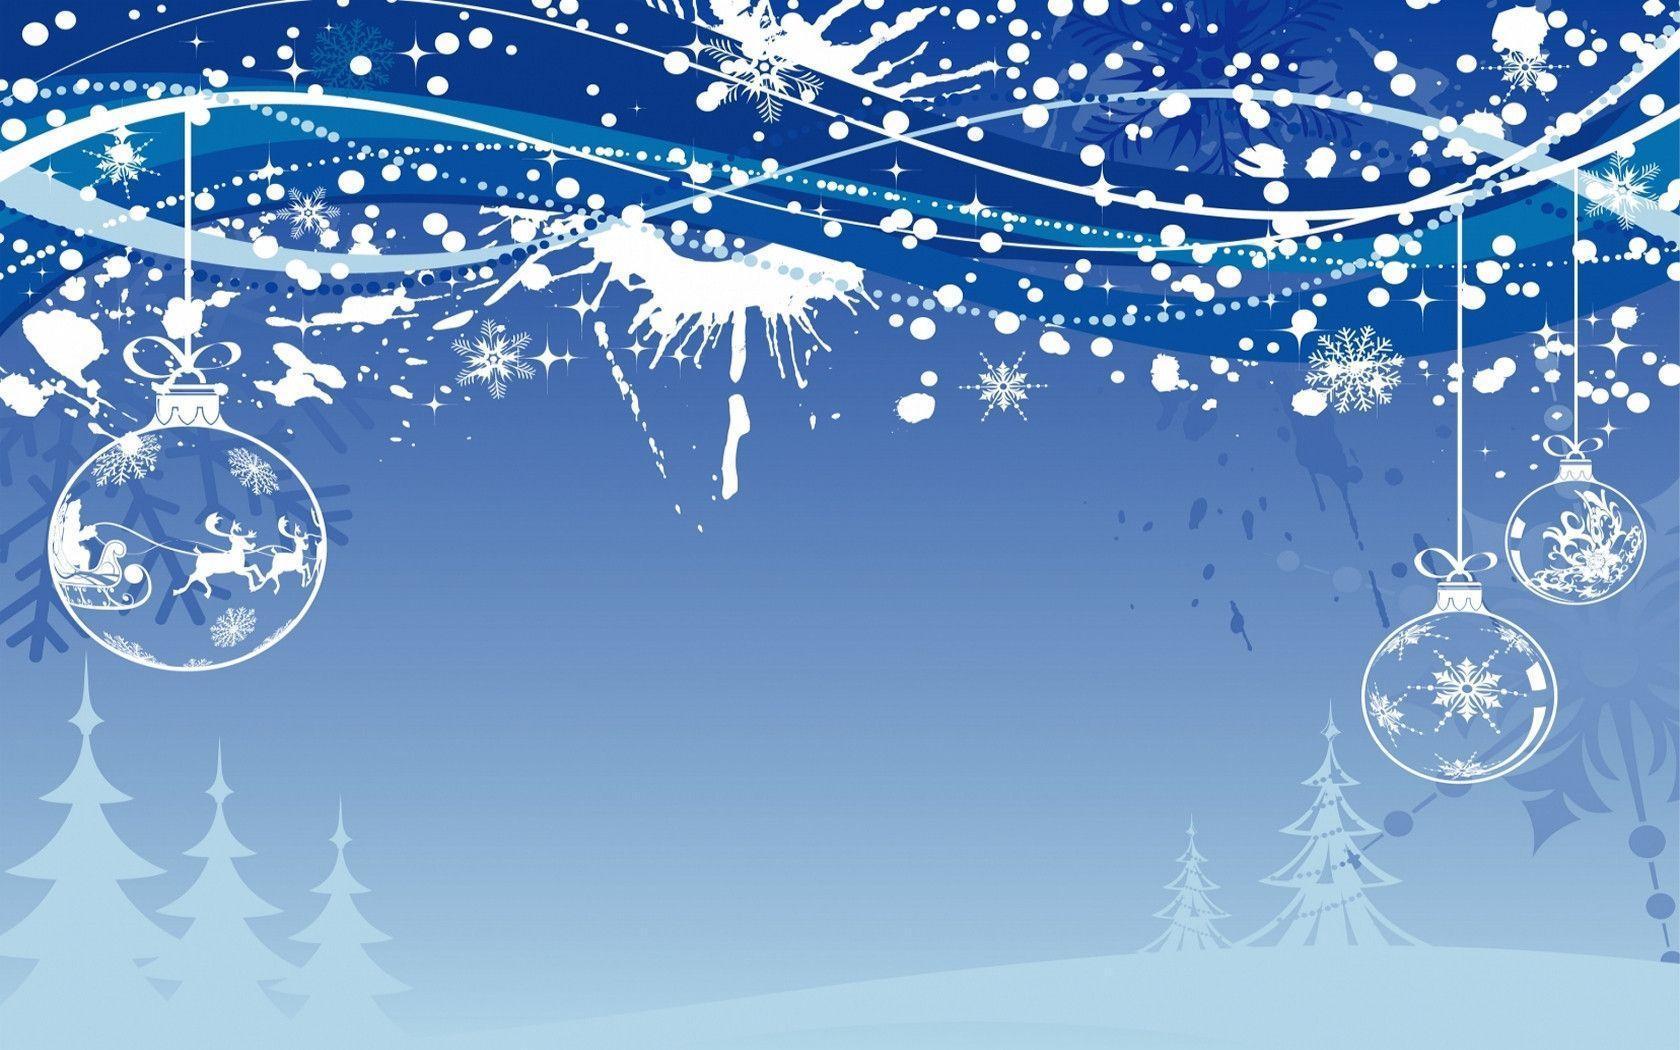 Wallpaper For > Christmas Winter Background For Desktop